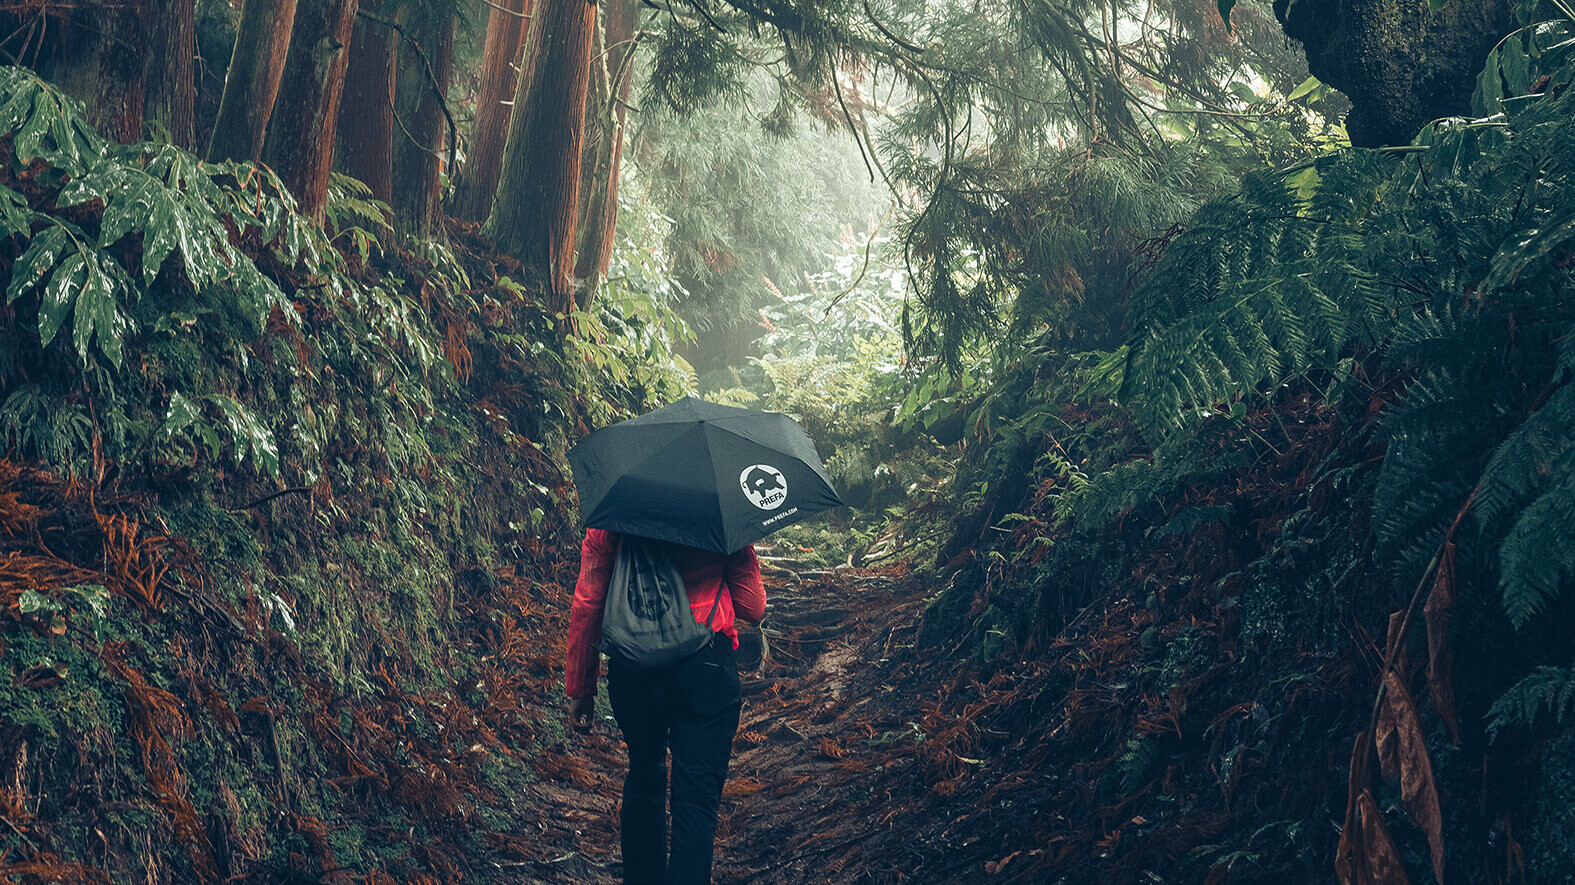 Snímek z lesa s turistkou v červené bundě s deštníkem PREFA a sportovním vakem na zádech symbolizuje ochranu životního prostředí a udržitelnost PREFA, cirkulární ekonomiku a recyklaci